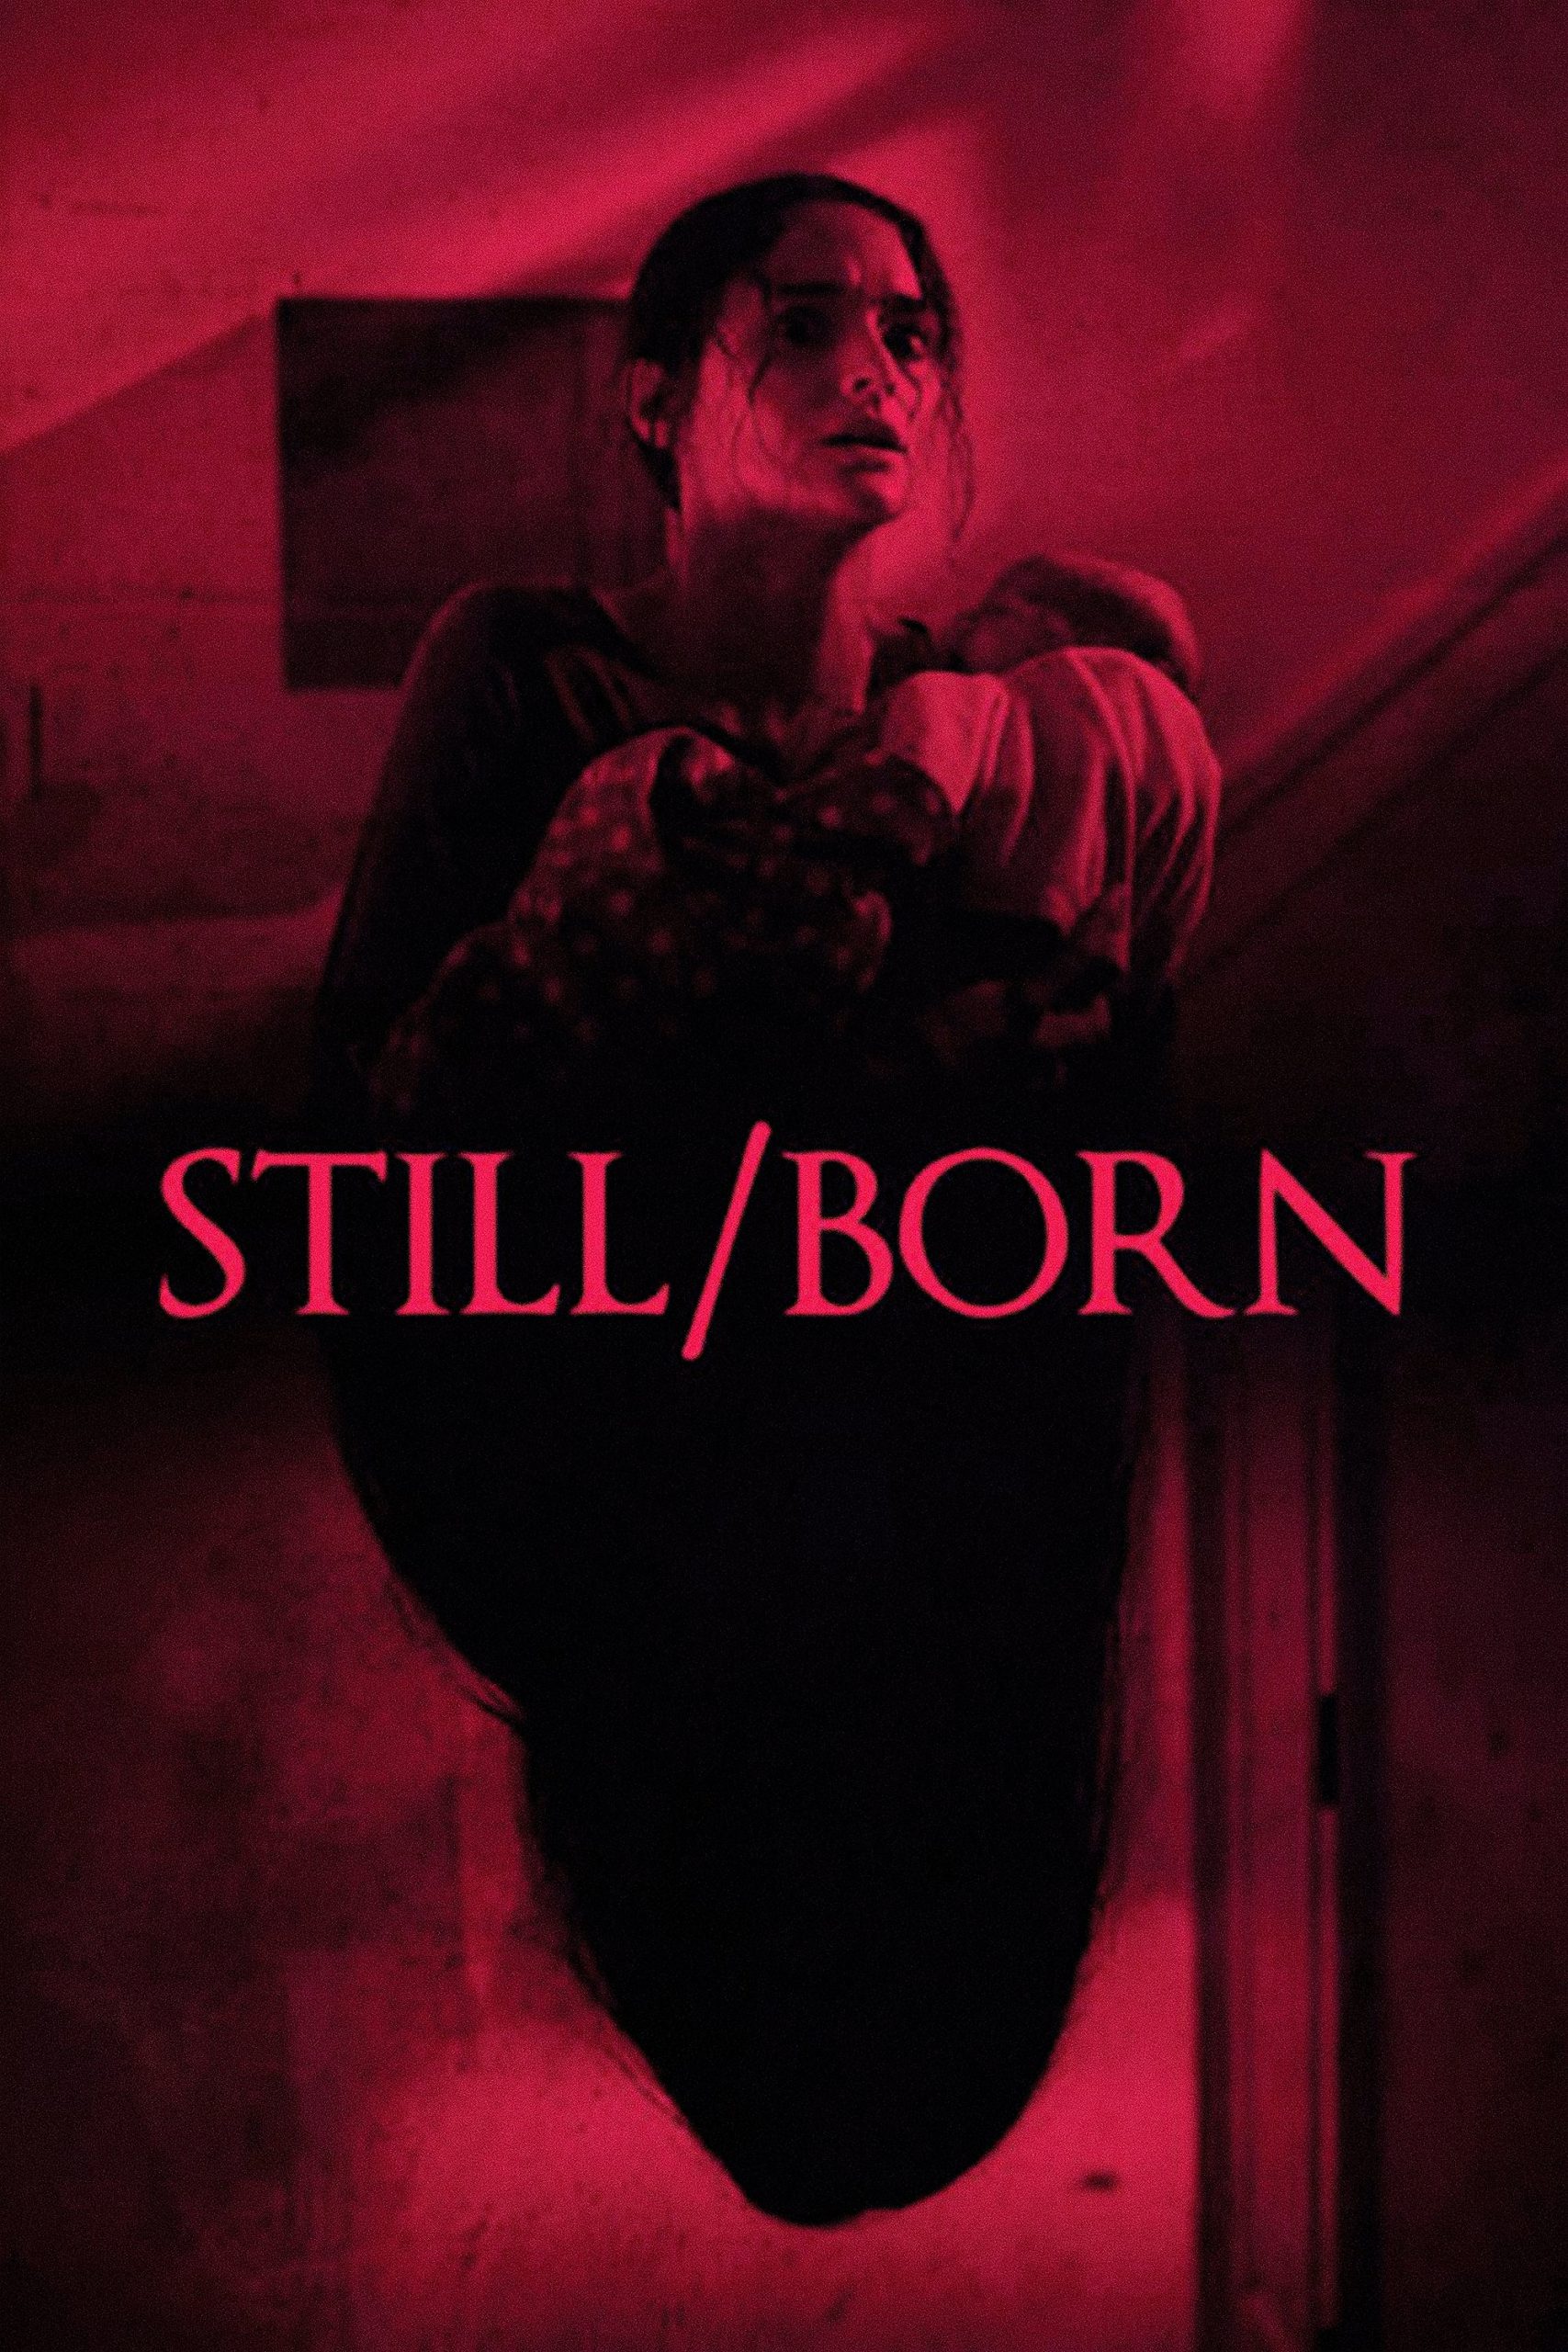 Still/Born [Sub-ITA] (2017)